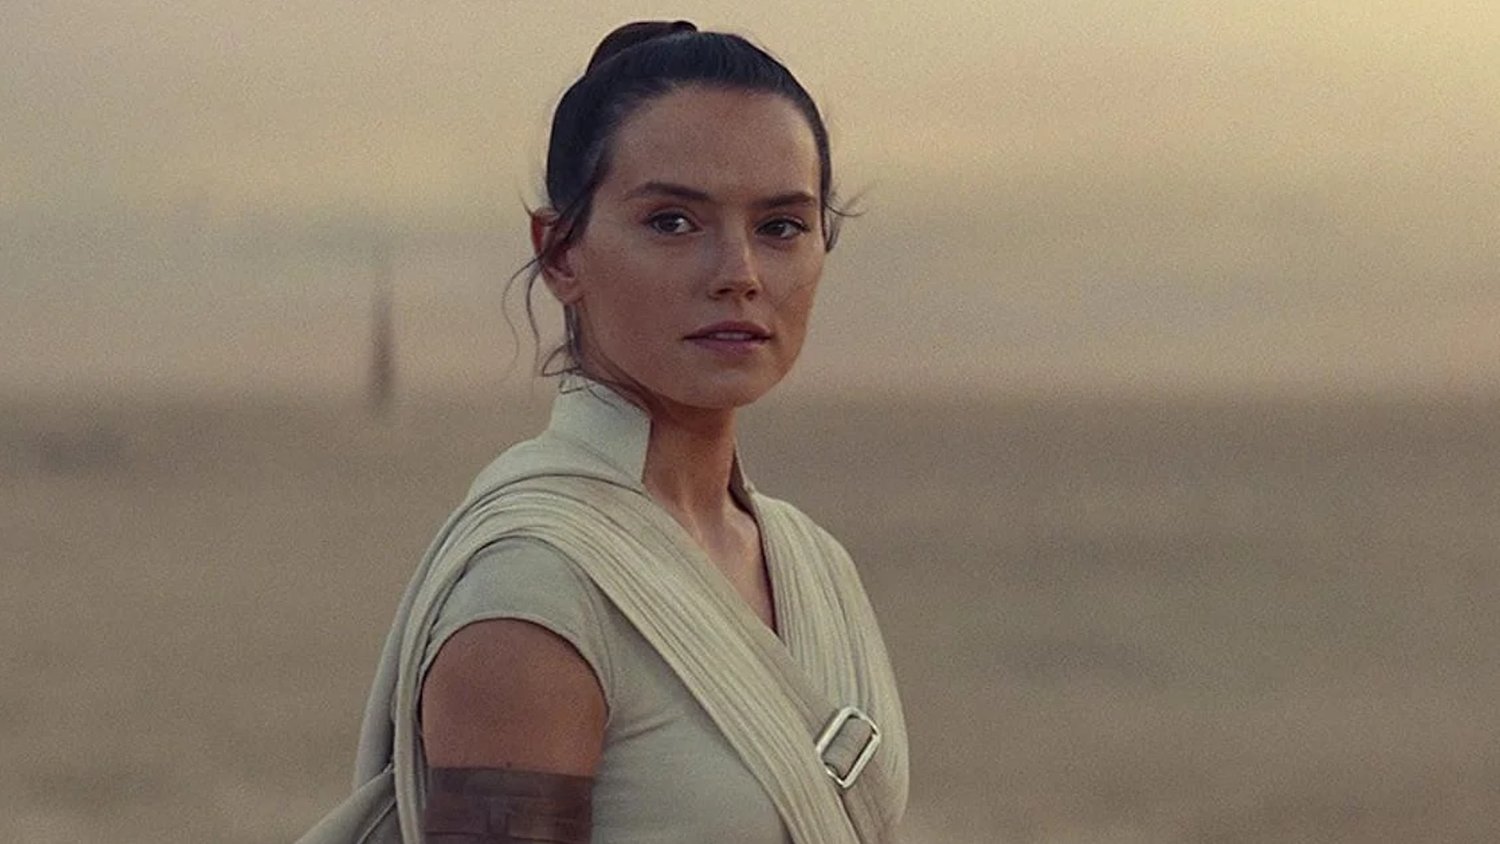 Le film STAR WARS de Rey Skywalker de Lucasfilm ne sera peut-être pas retardé après tout